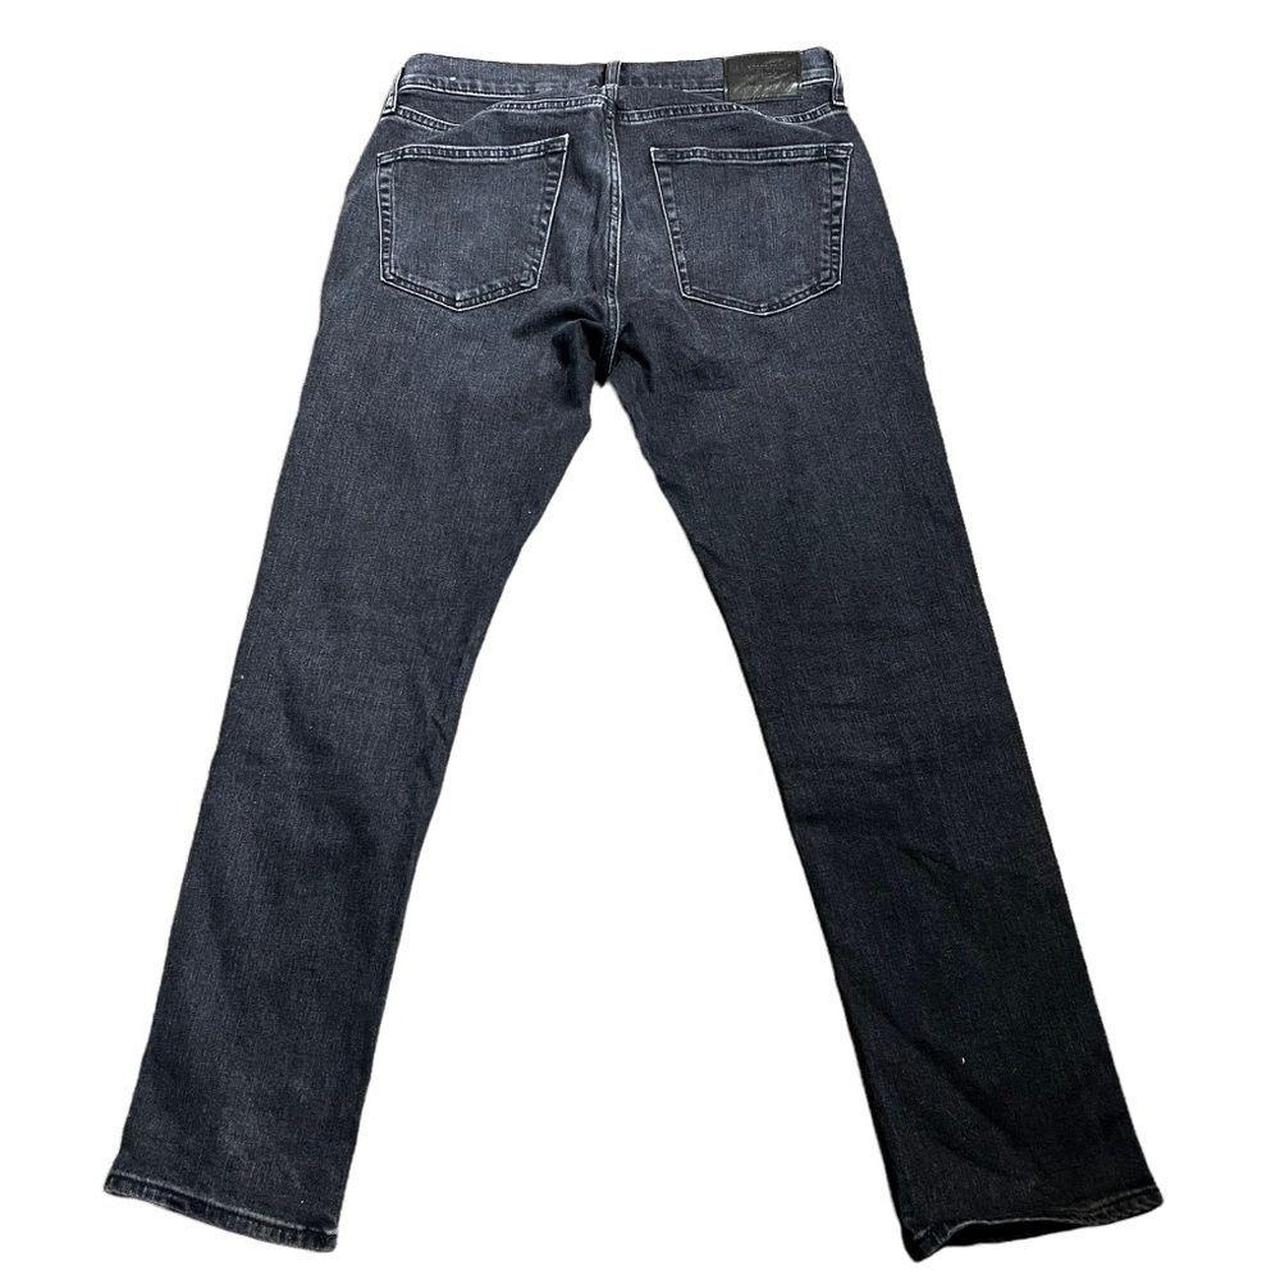 Washed Black Langdon Skinny Stretch Denim Jeans ... - Depop